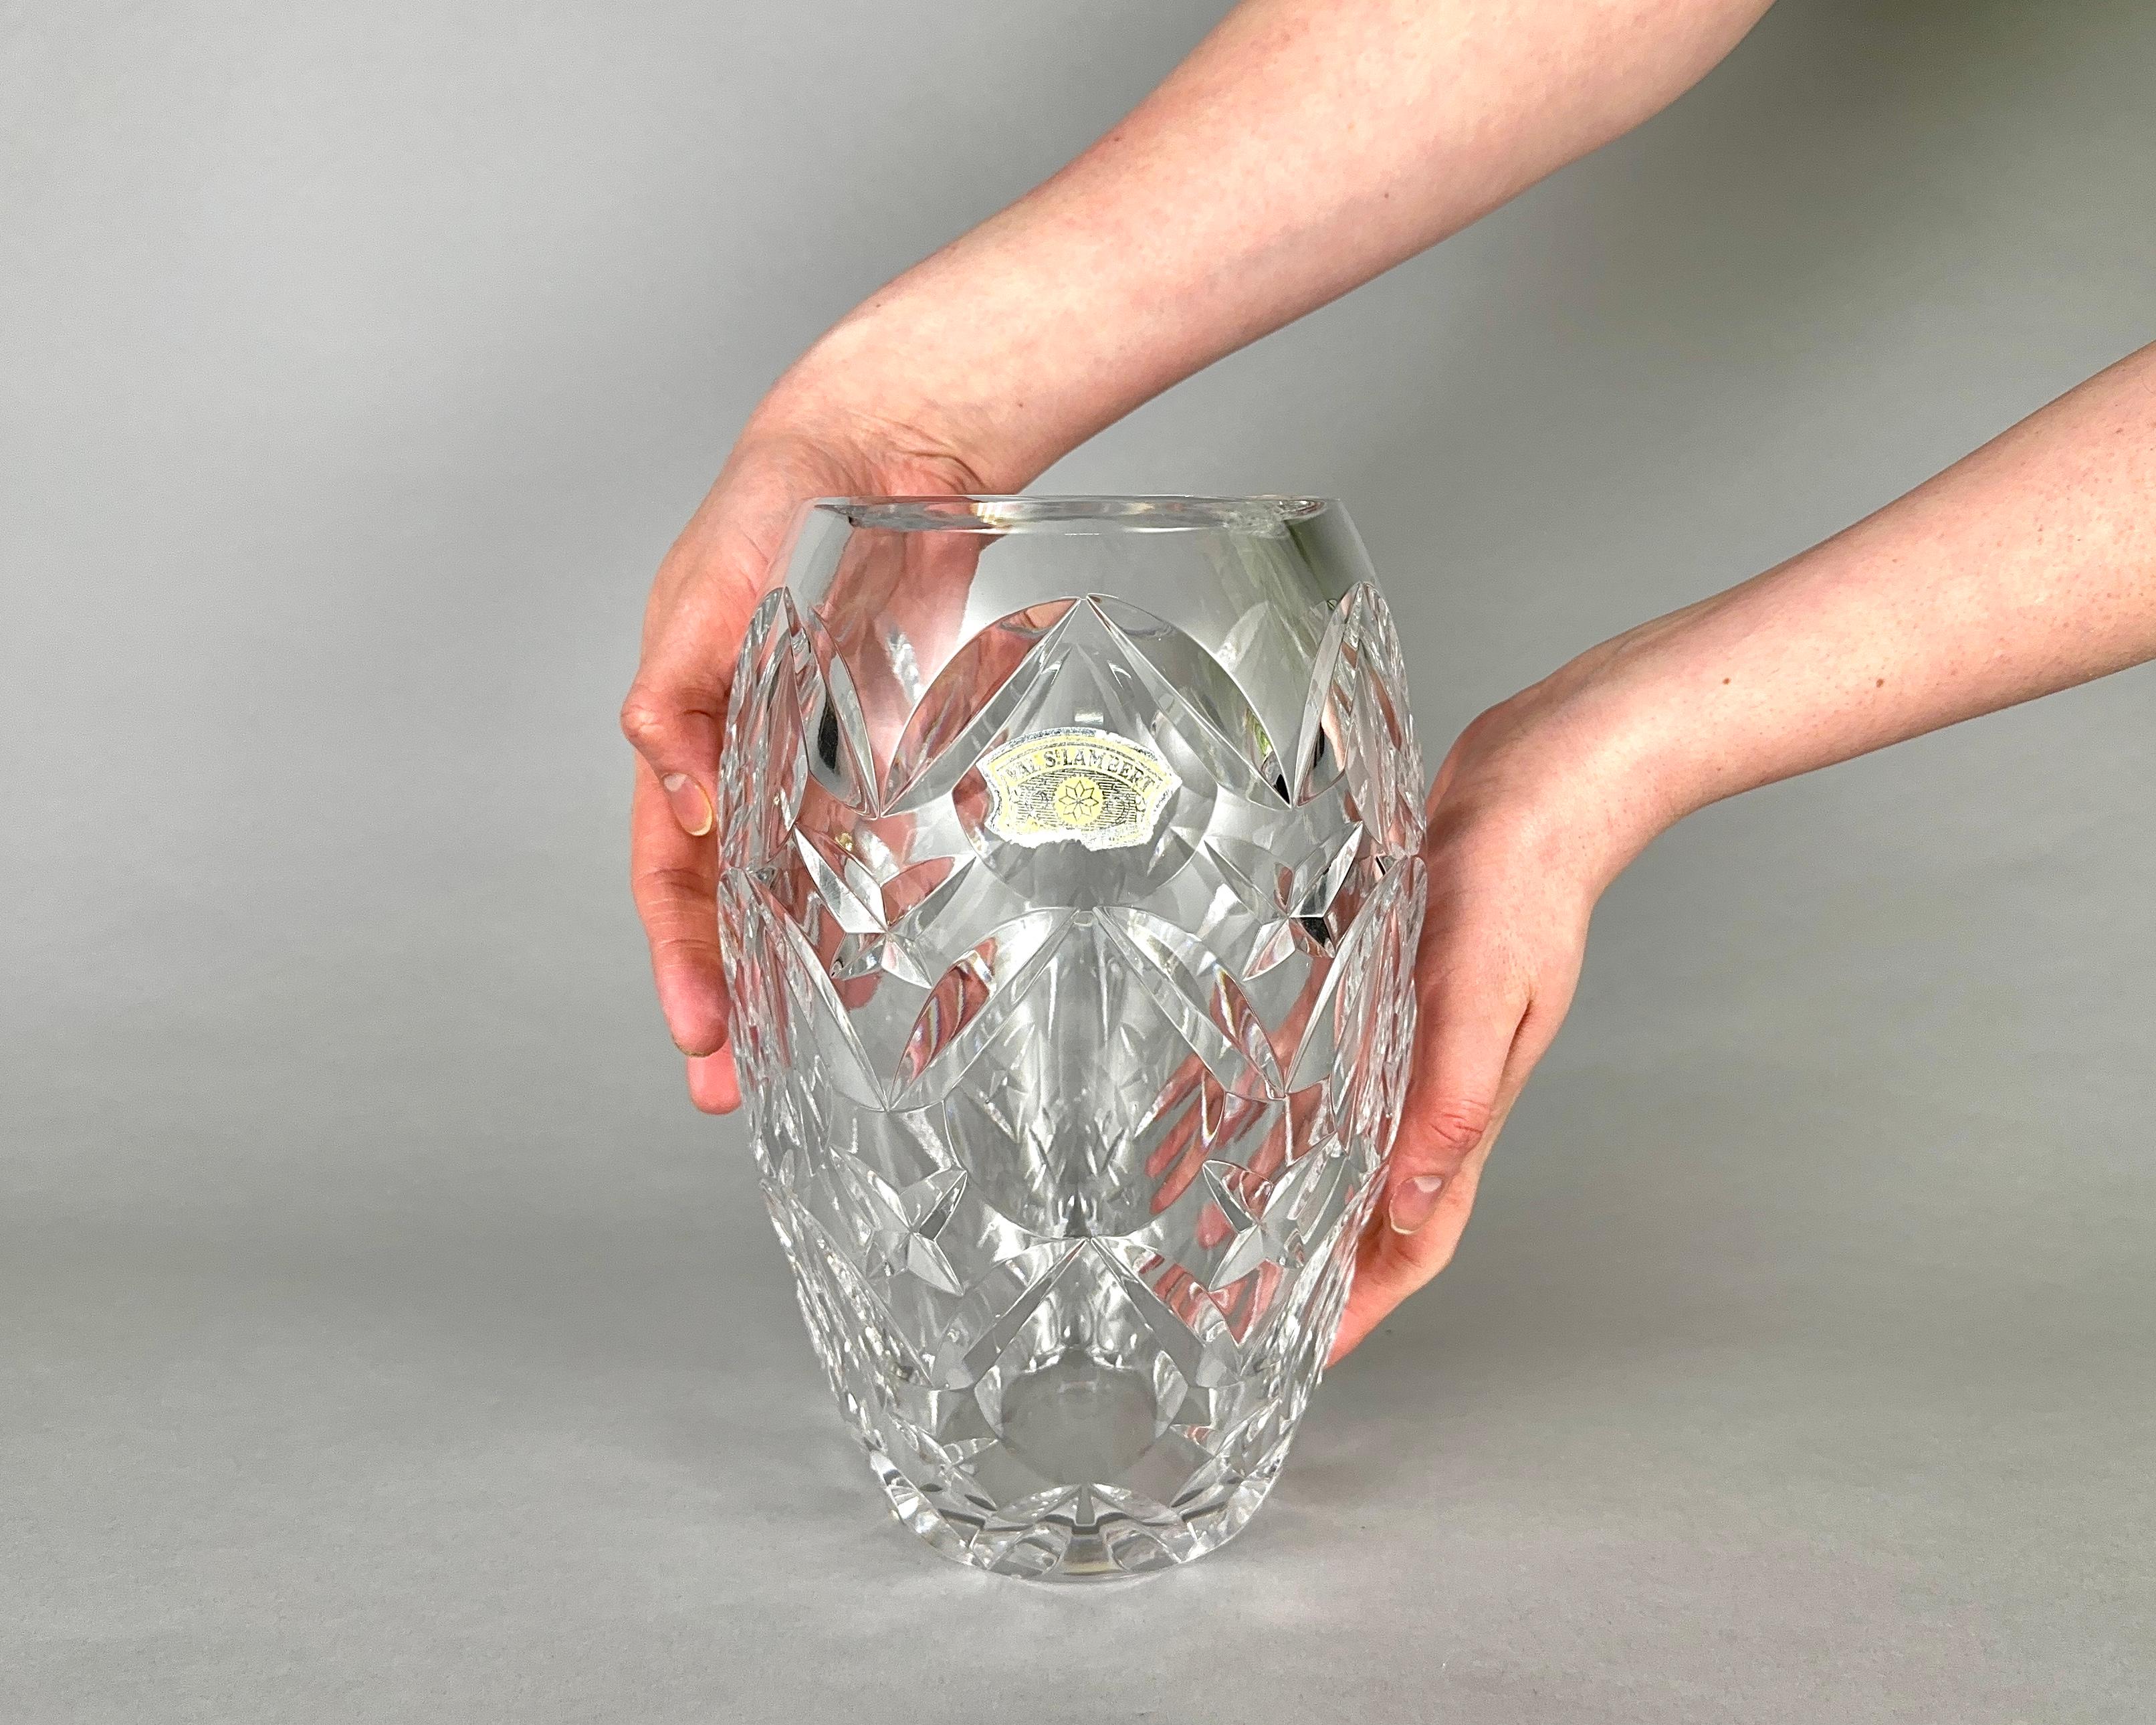 Val SAINT LAMBERT Vase, Cristal, fabricant belge de cristal, fondé en 1826 et basé à Serena, est titulaire d'un mandat royal du roi Albert II.

Le vase est en cristal facetté incolore et est fabriqué dans le style Art déco.

Coupés et polis à la